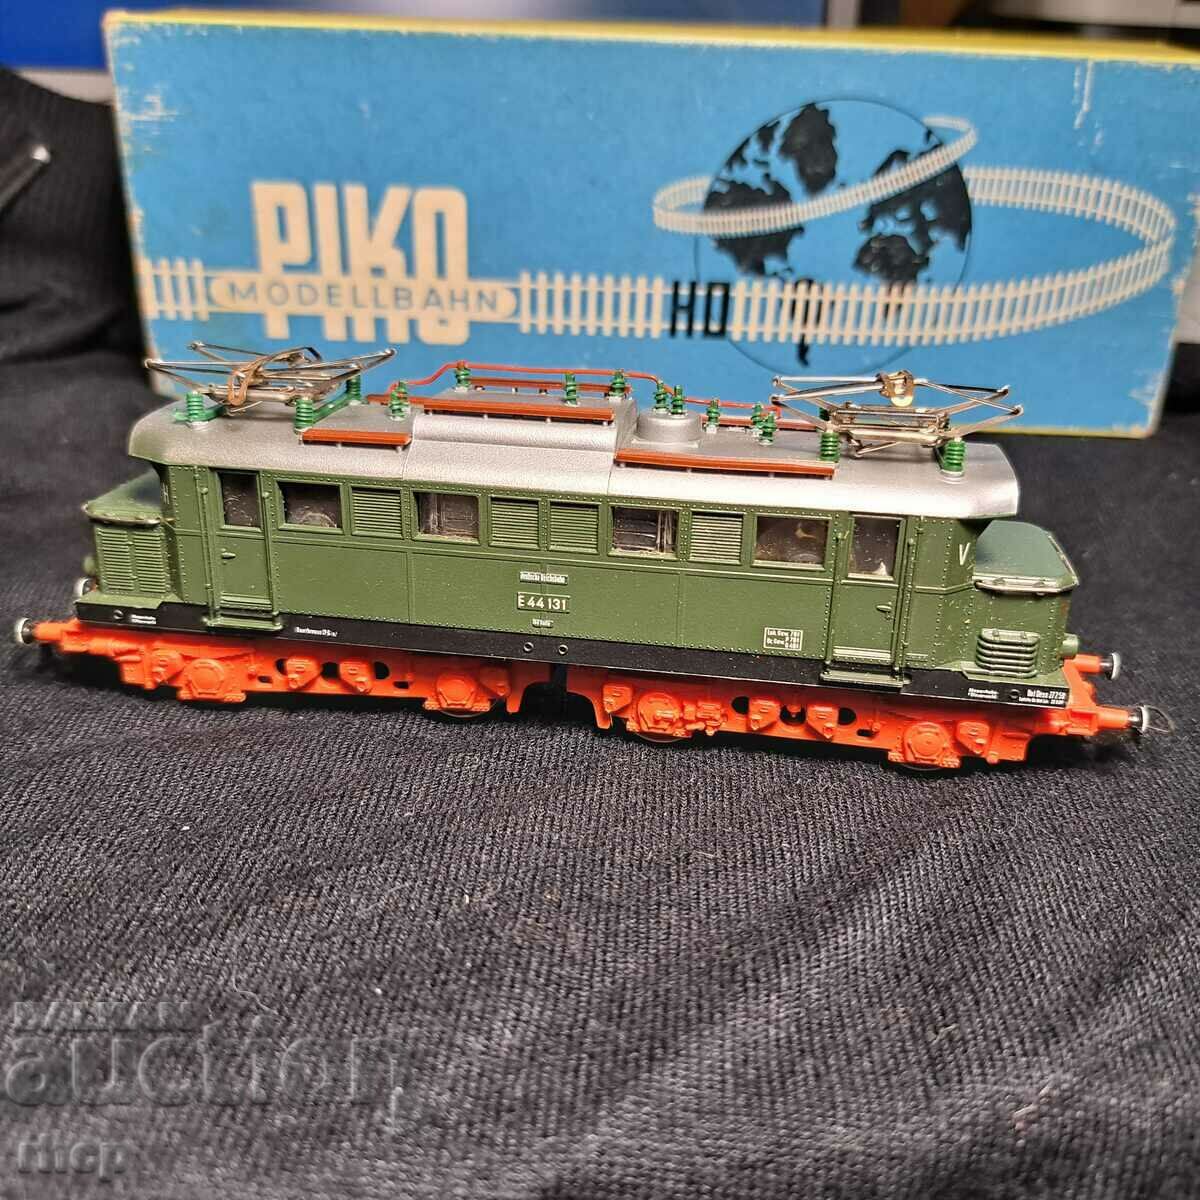 PIKO HO Locomotive E44 model train